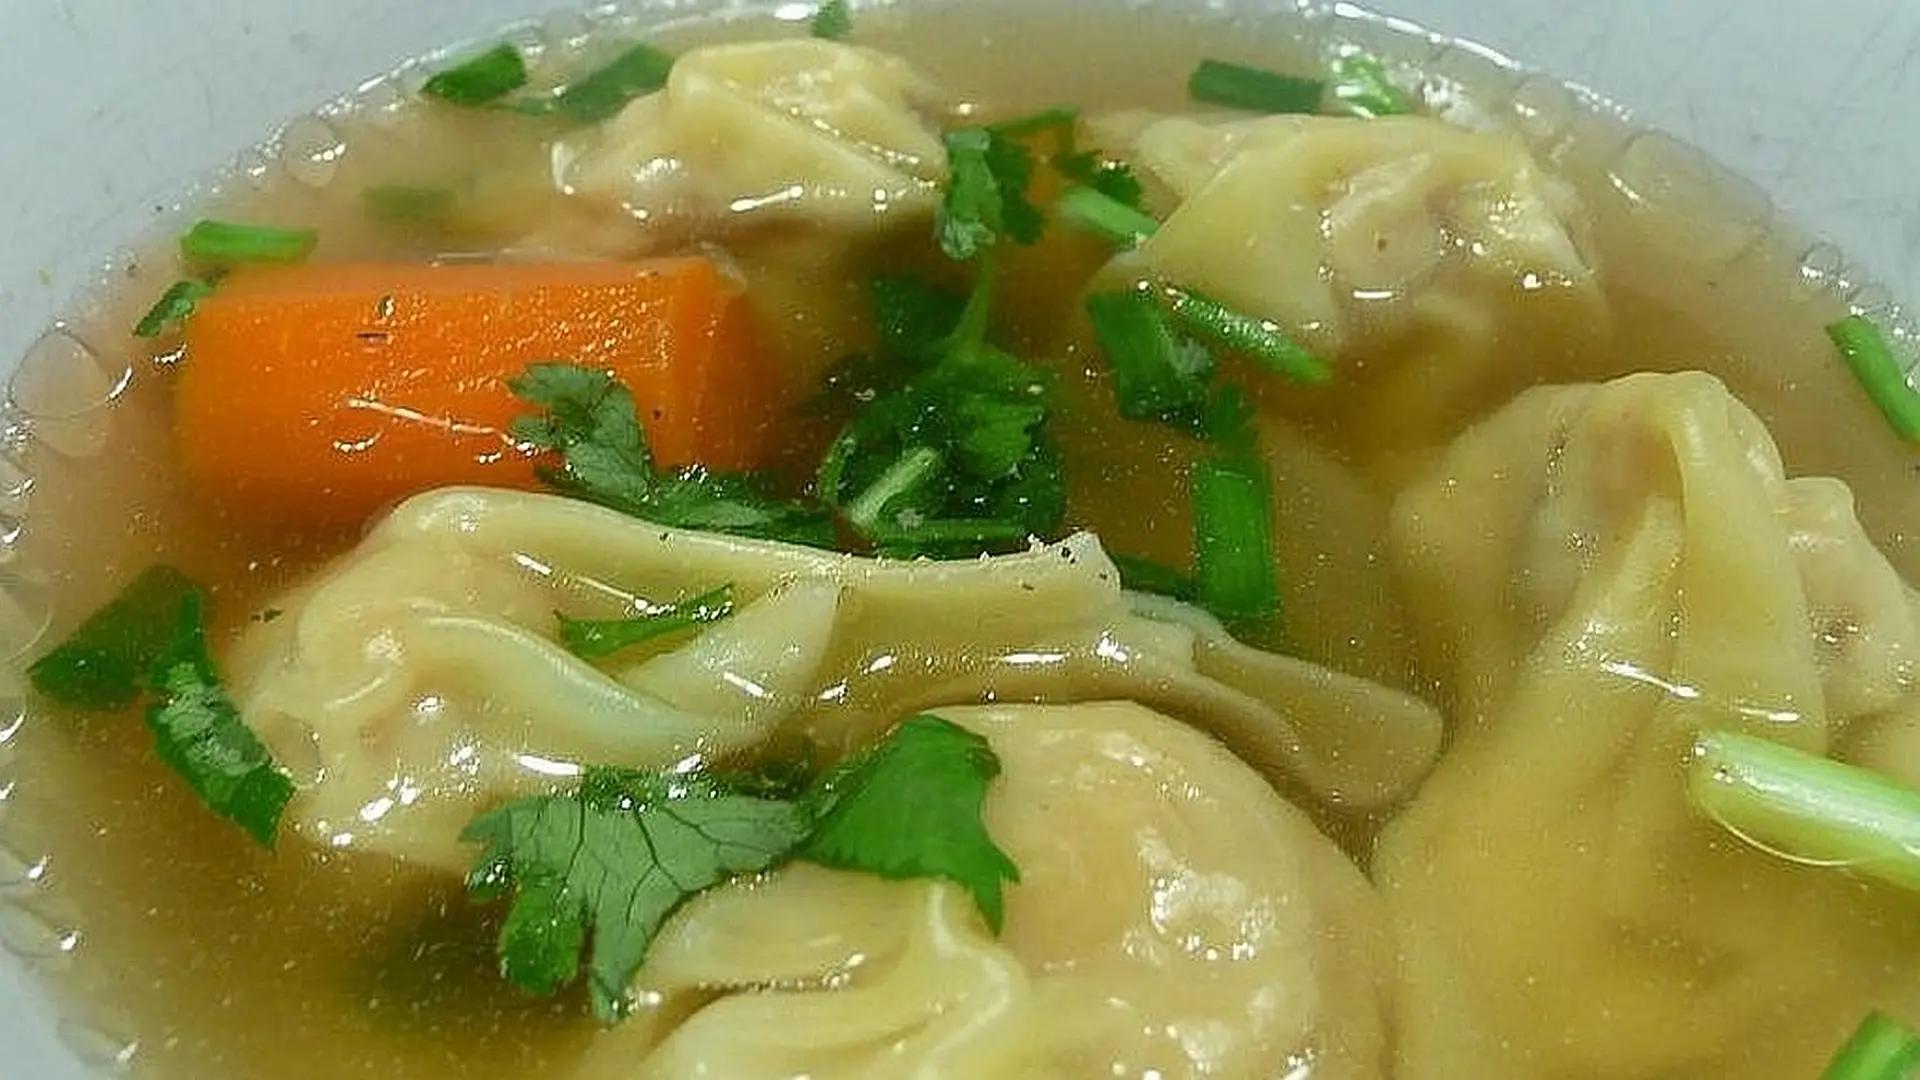 Thailändische Wan-Tan-Suppe - เกี้ยวน้ำหมู (Giaw Nam Muh)